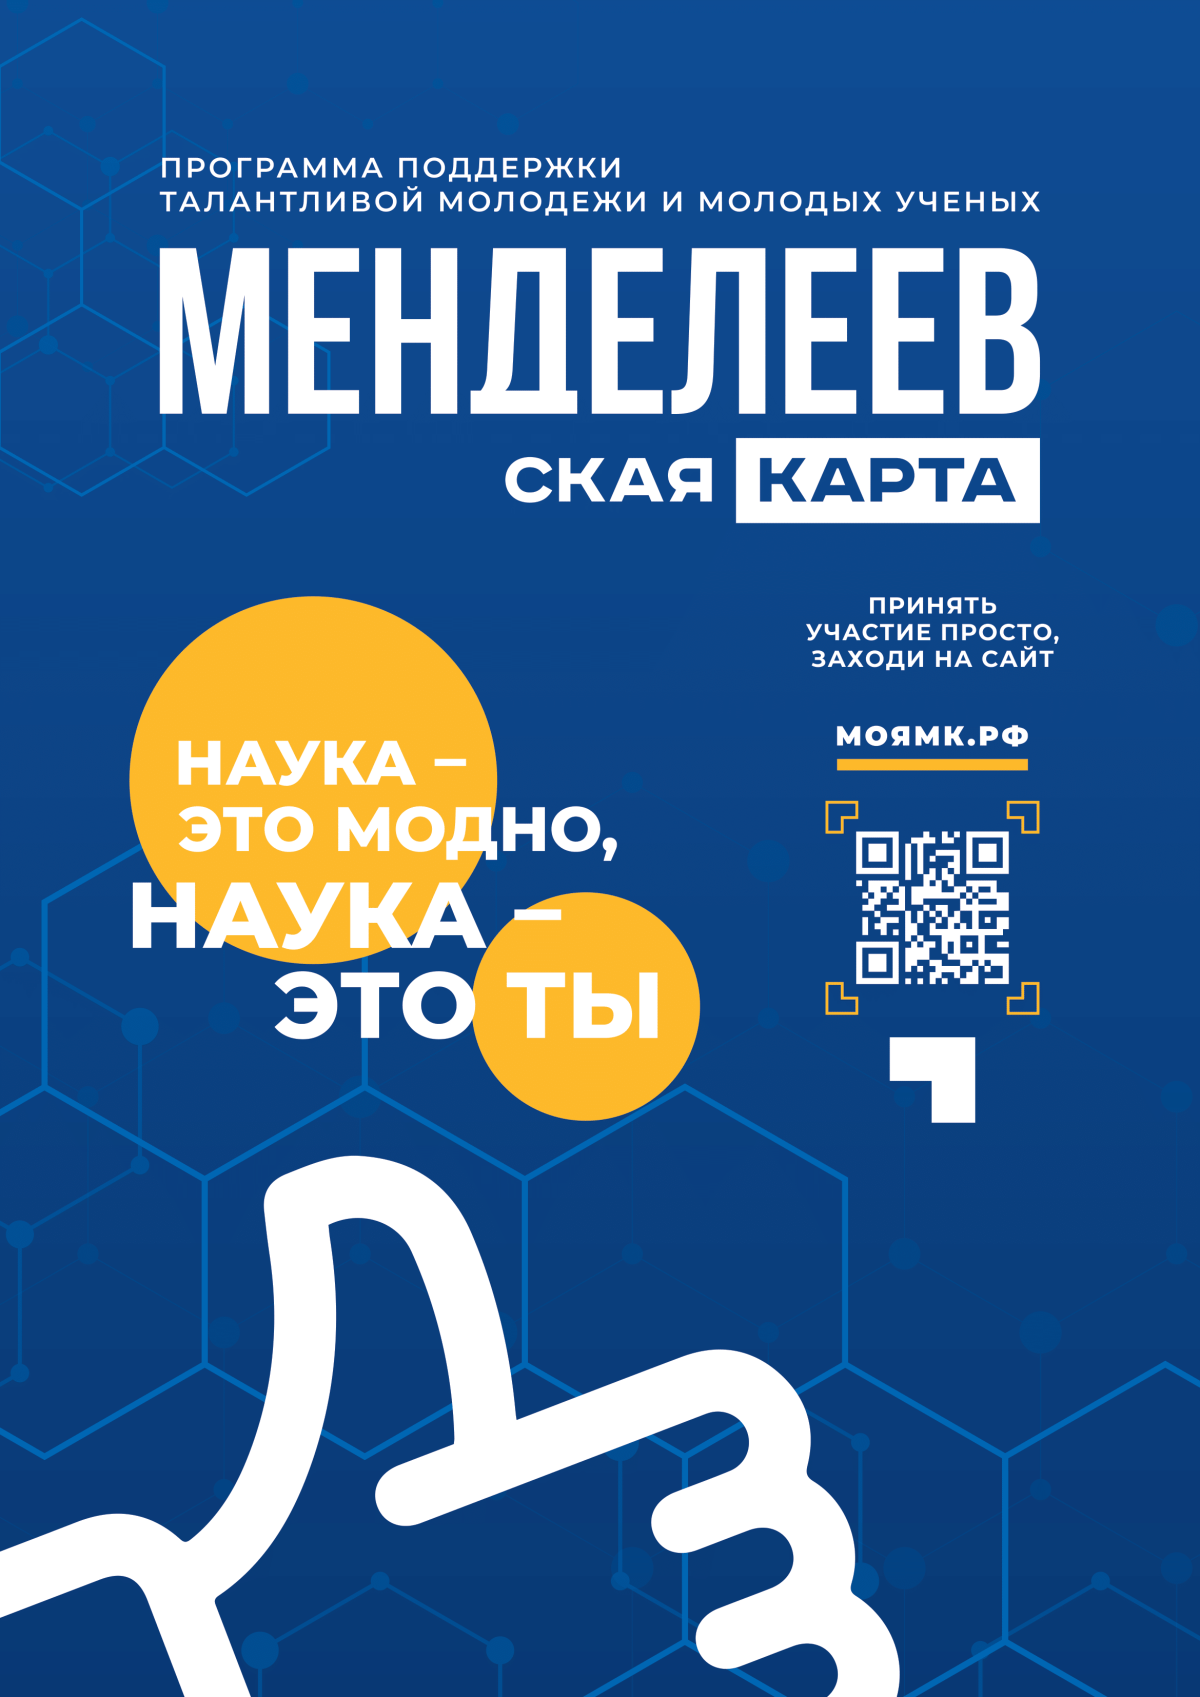 «Менделеевская карта» – новый всероссийский проект по поддержке талантливой молодежи и молодых ученых